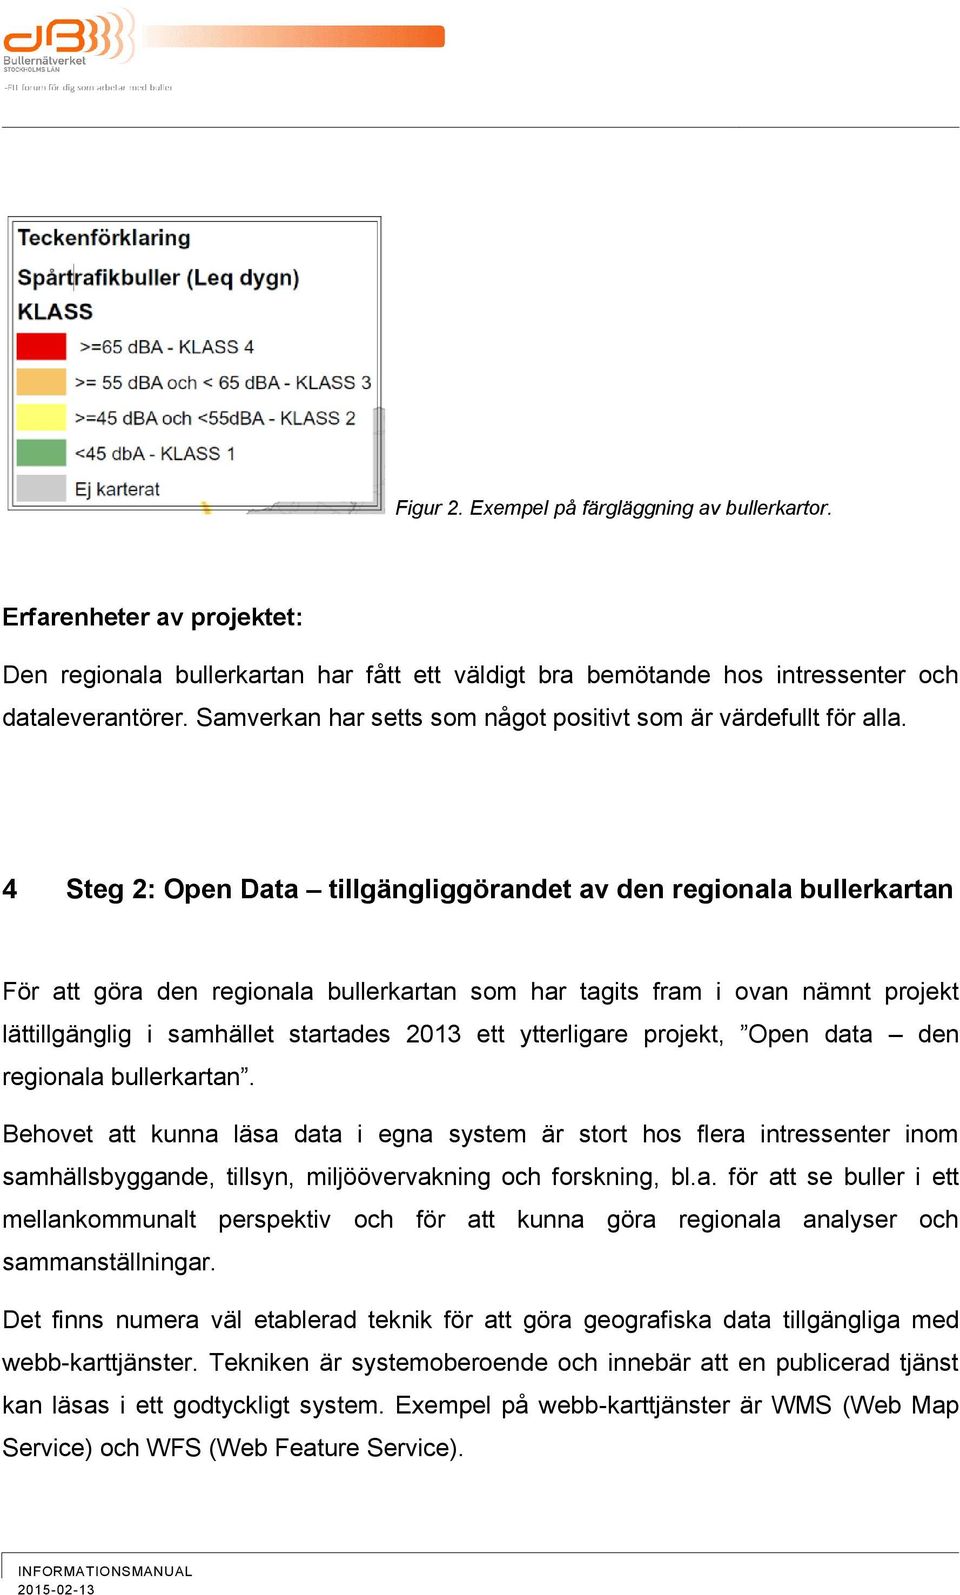 4 Steg 2: Open Data tillgängliggörandet av den regionala bullerkartan För att göra den regionala bullerkartan som har tagits fram i ovan nämnt projekt lättillgänglig i samhället startades 2013 ett